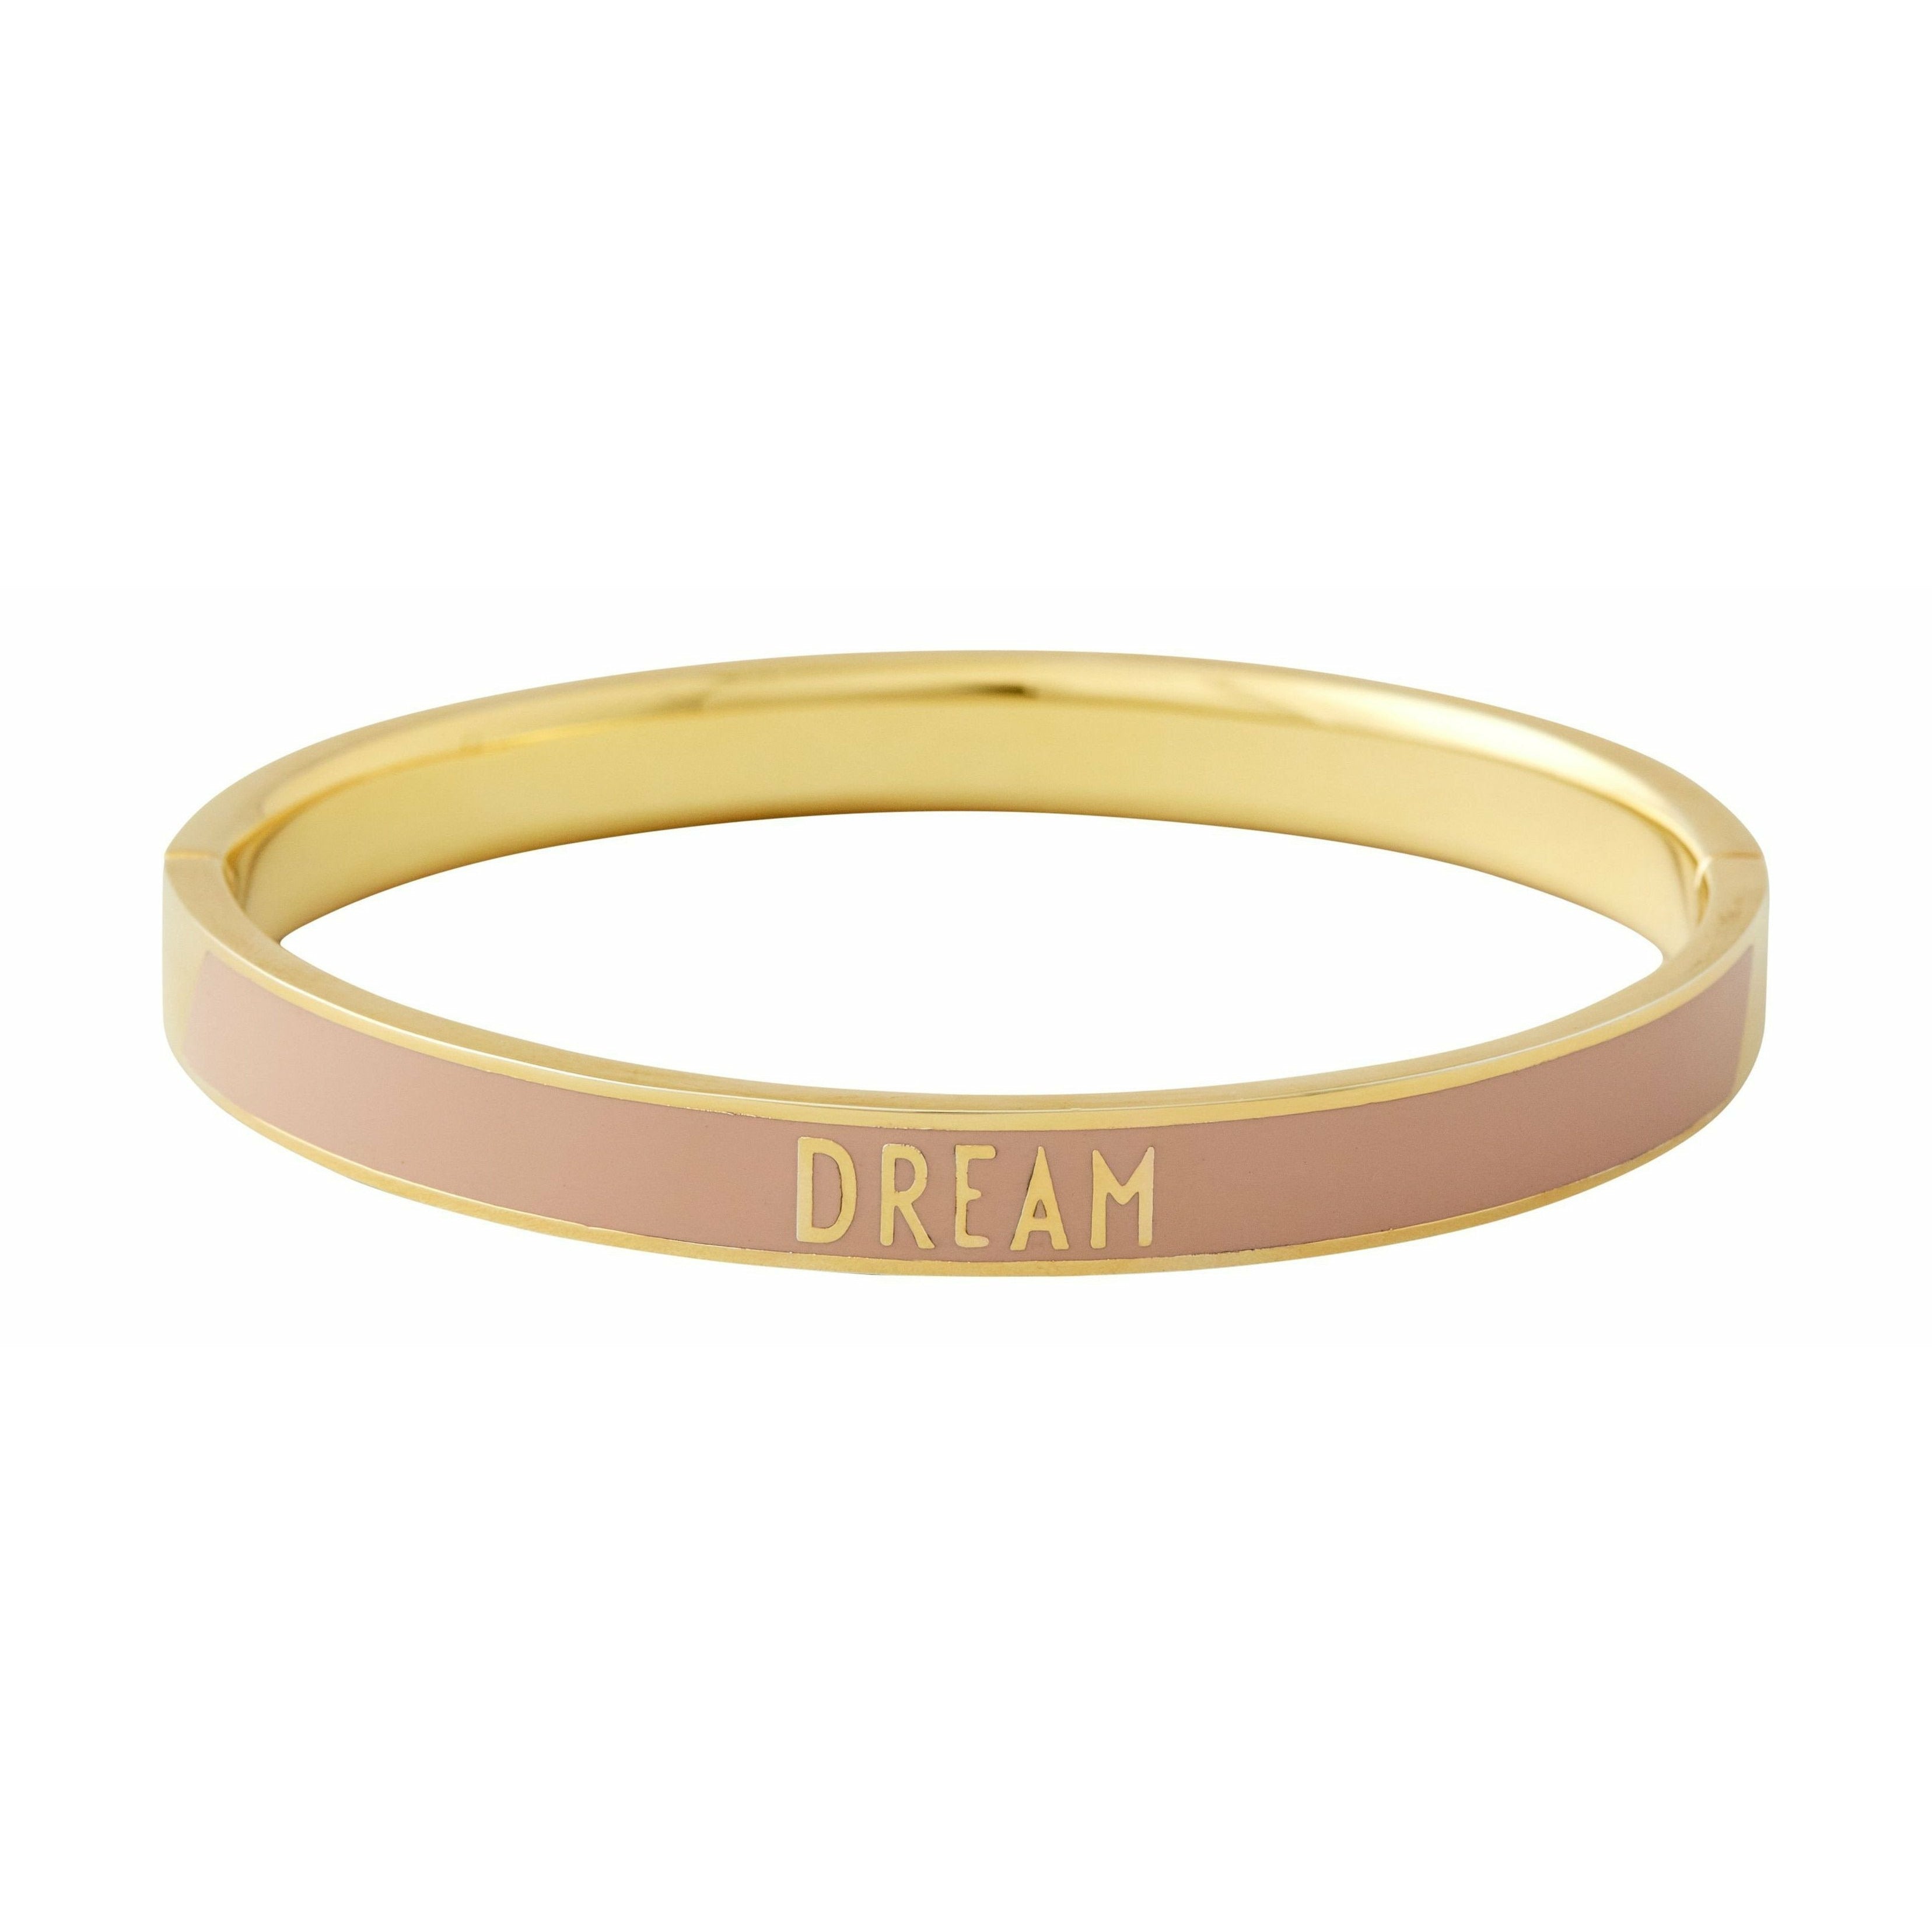 Letras de diseño Word Candy Bracelet Dream Brass Gold Platted, Beige